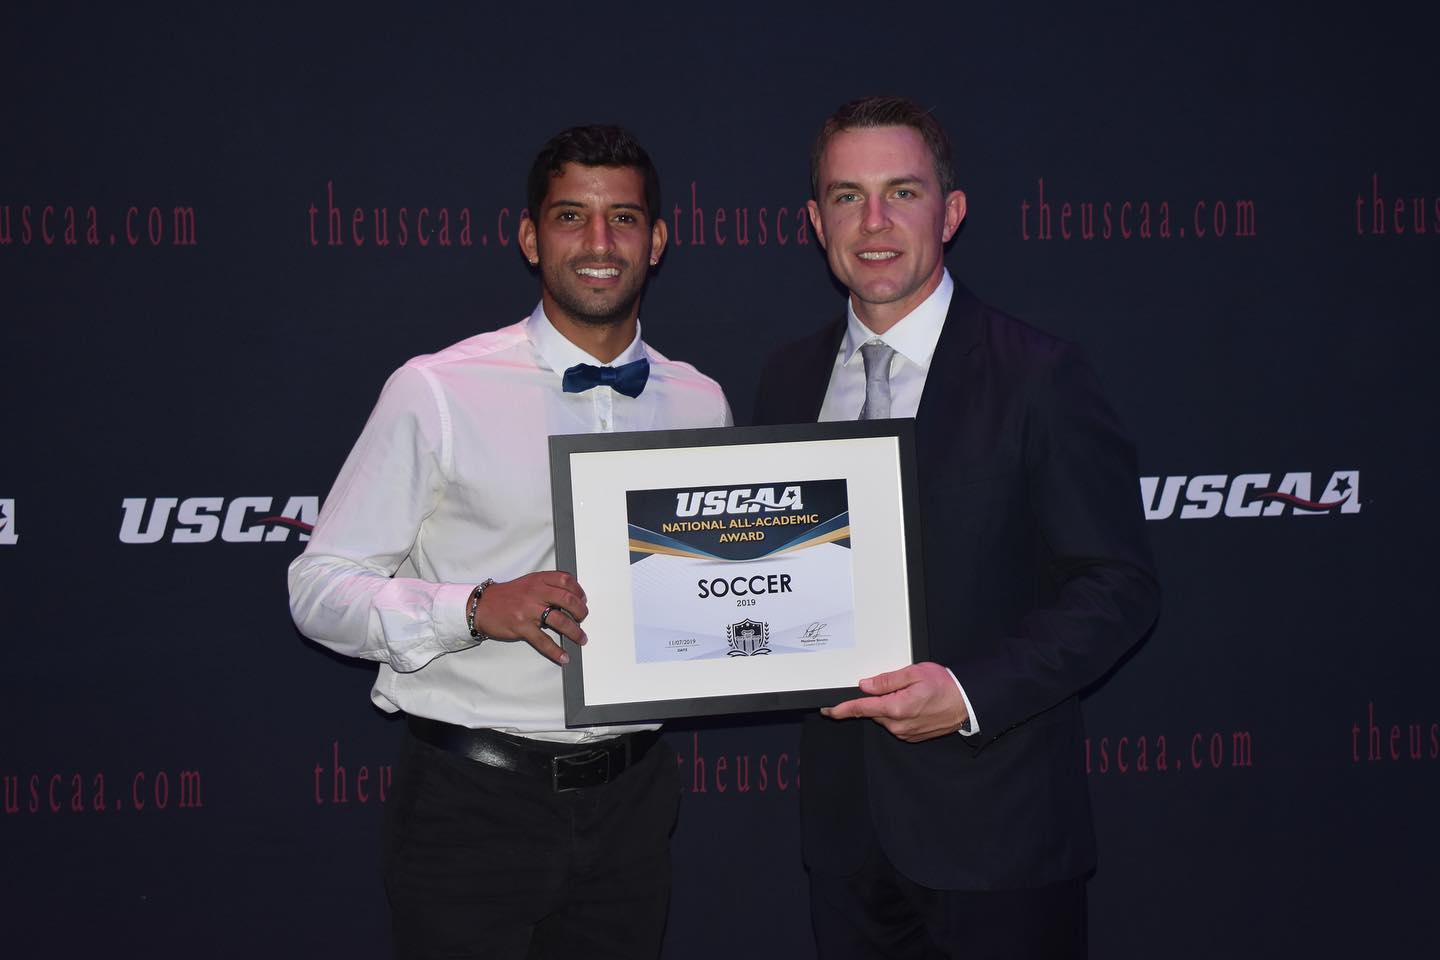 men's soccer player Benjamin Zamora receiving the USCAA All-Academic Award